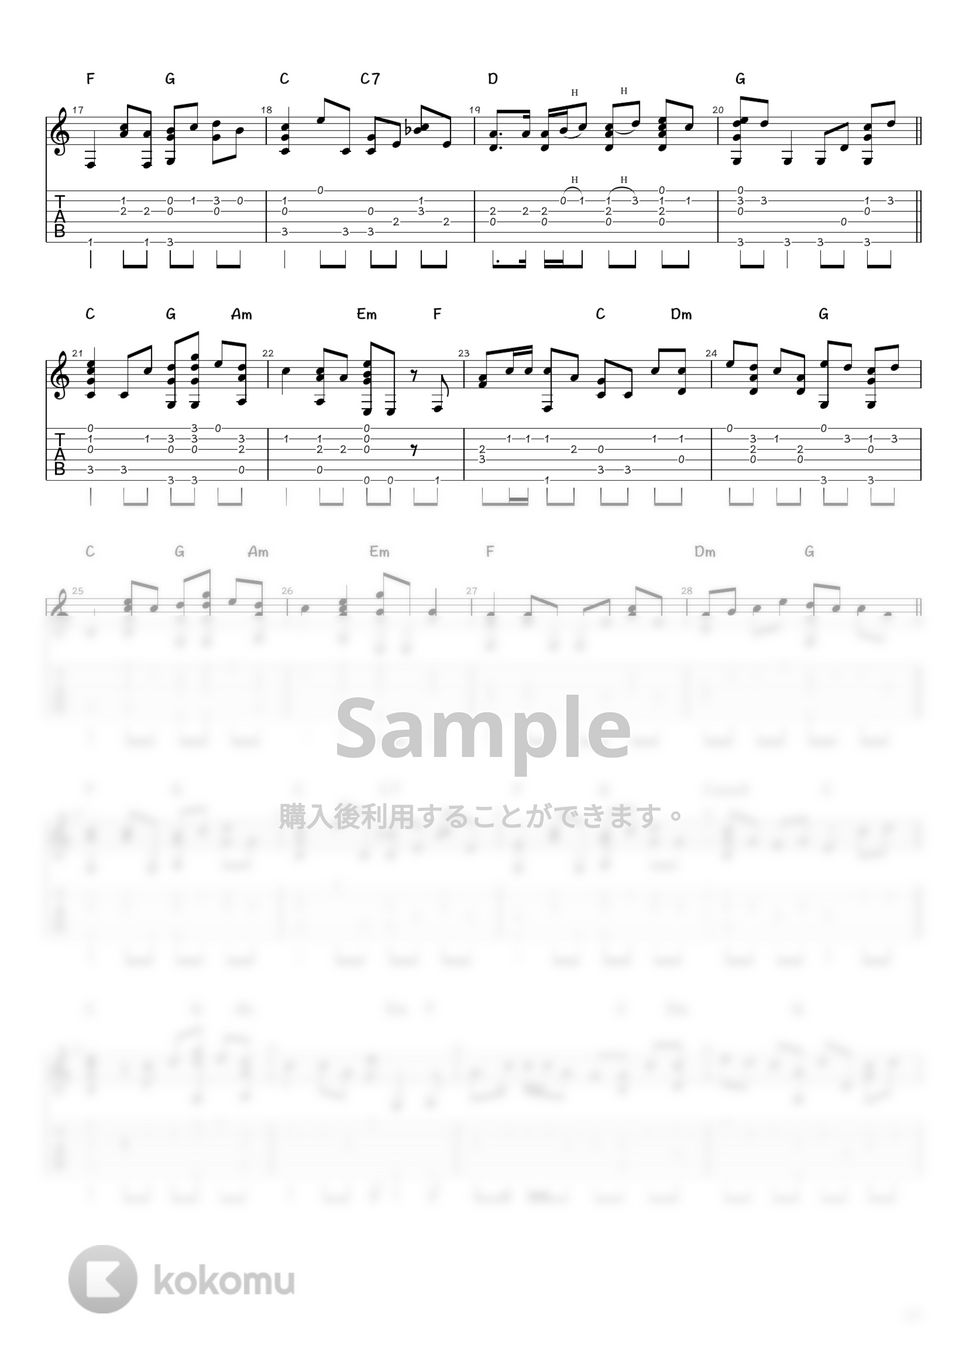 森七菜 - スマイル (ソロギター / タブ譜) by 井上さとみ